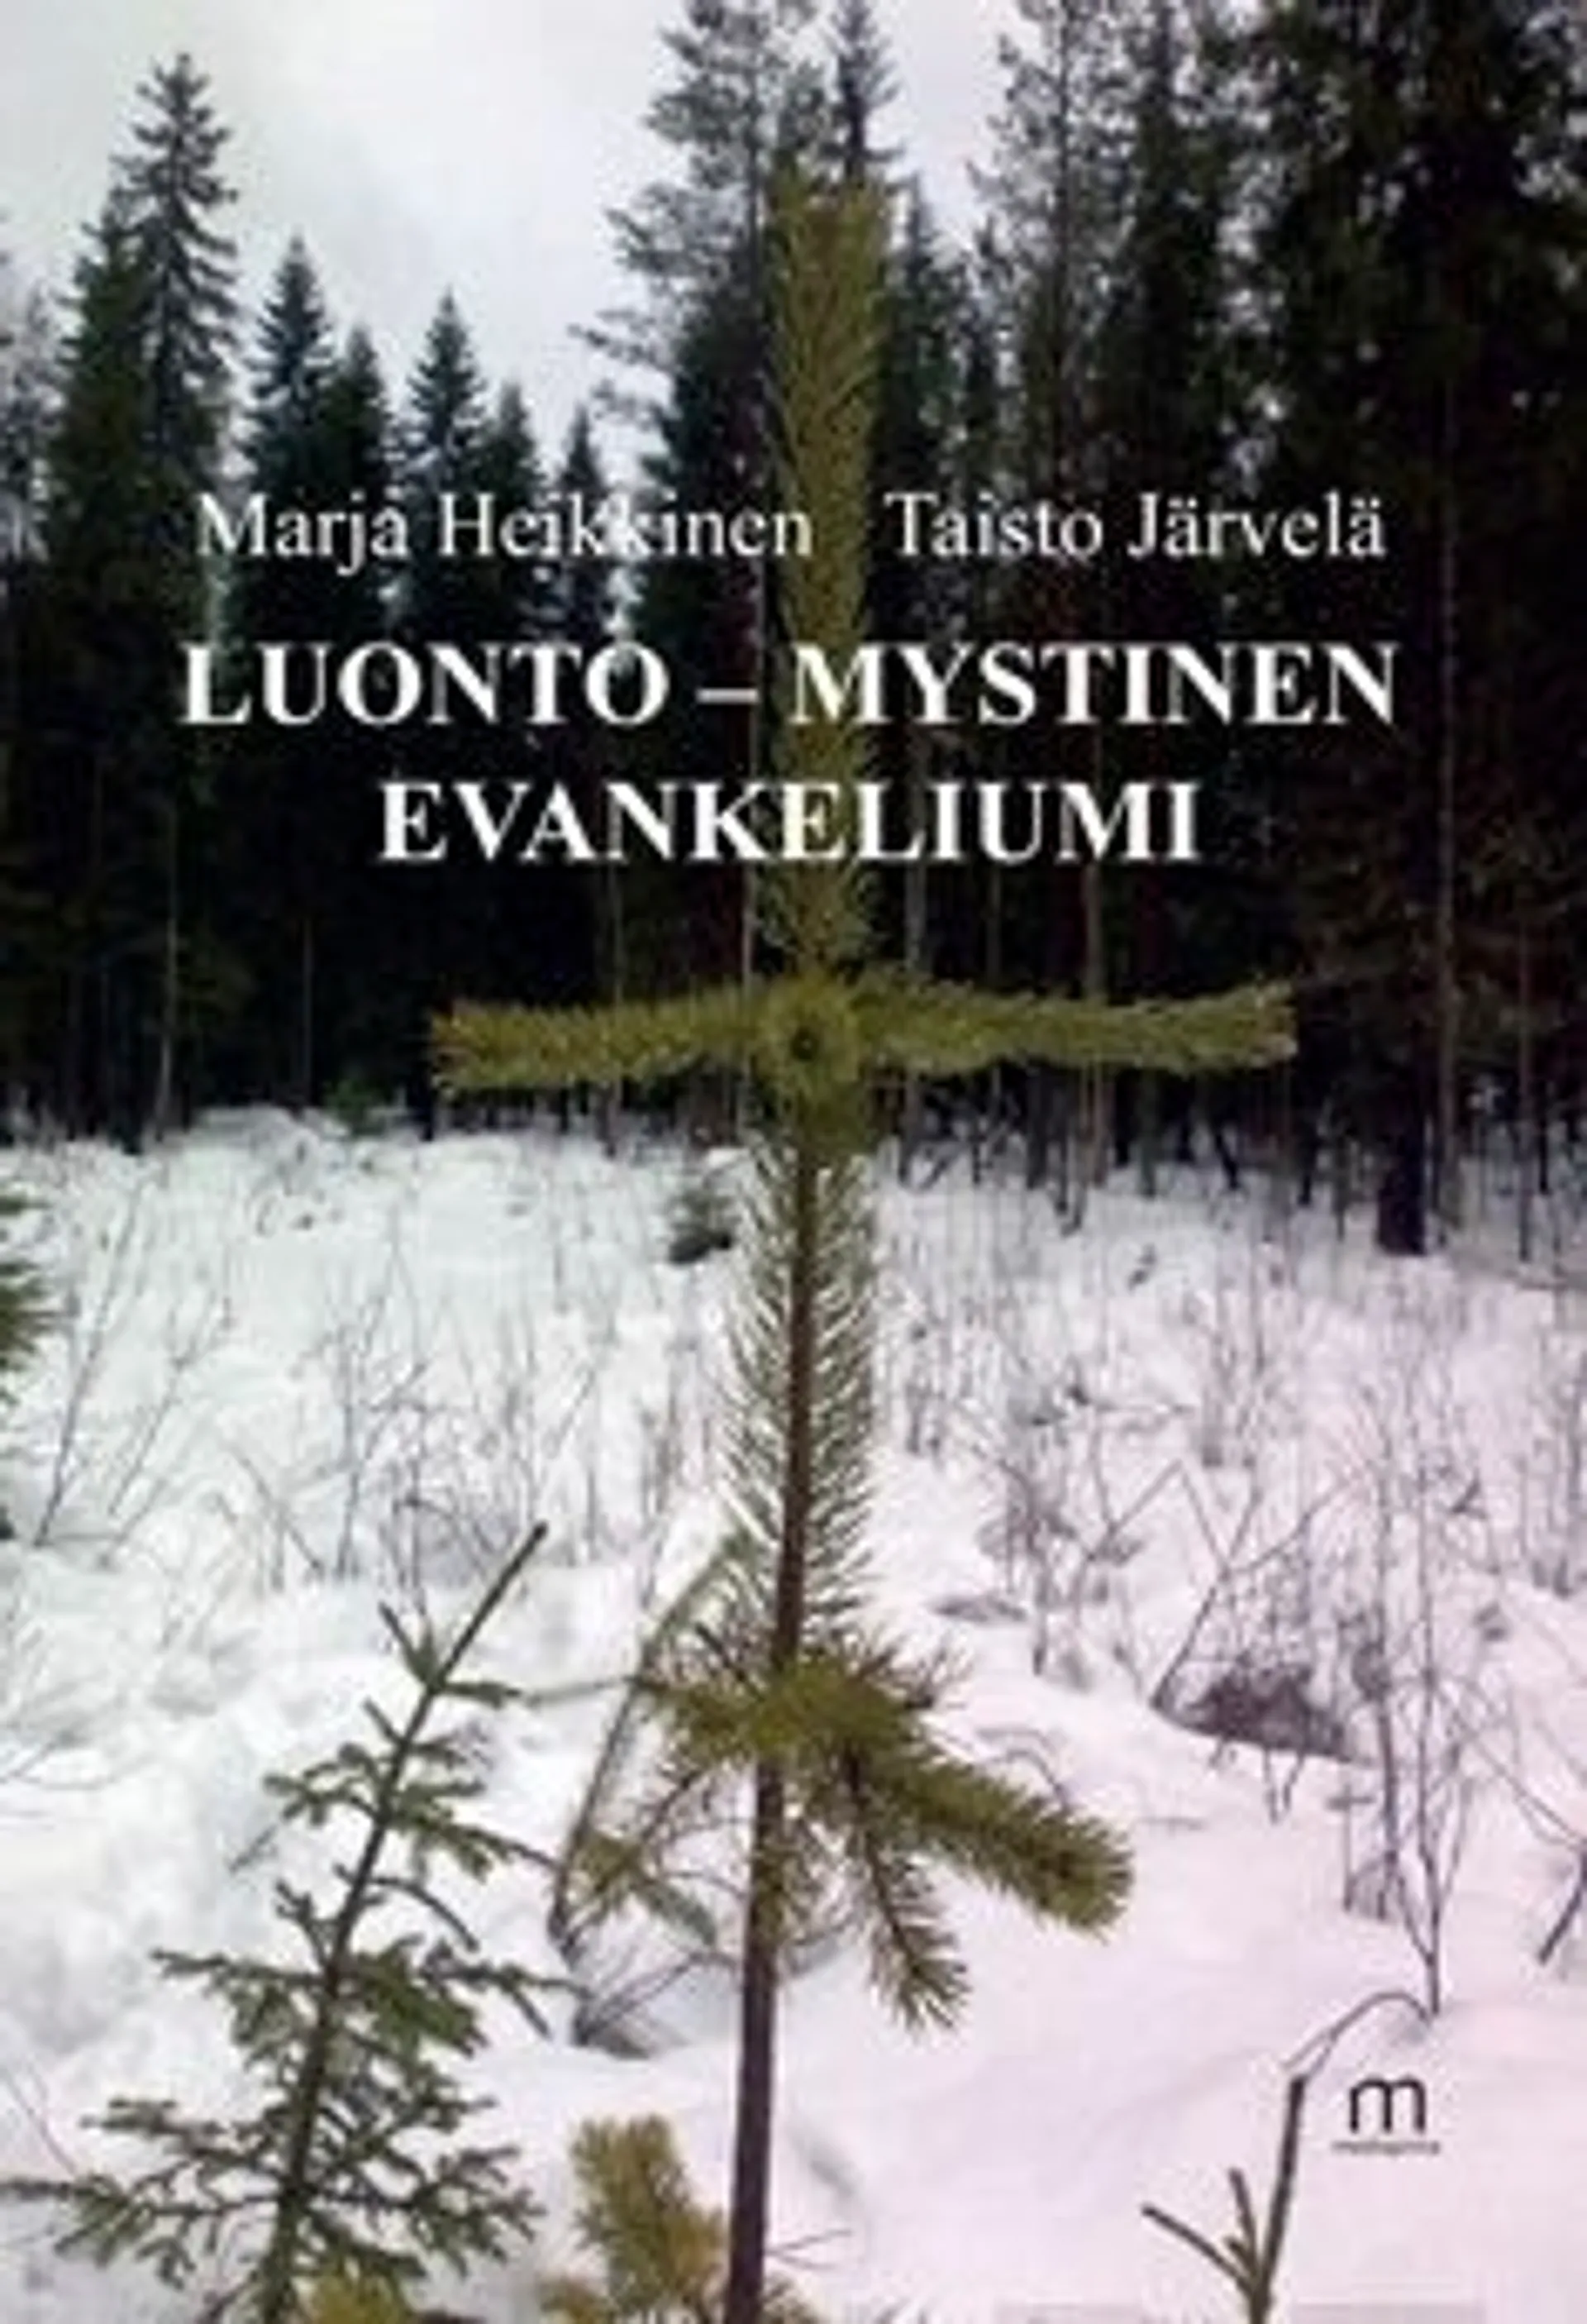 Heikkinen, Luonto - mystinen evankeliumi